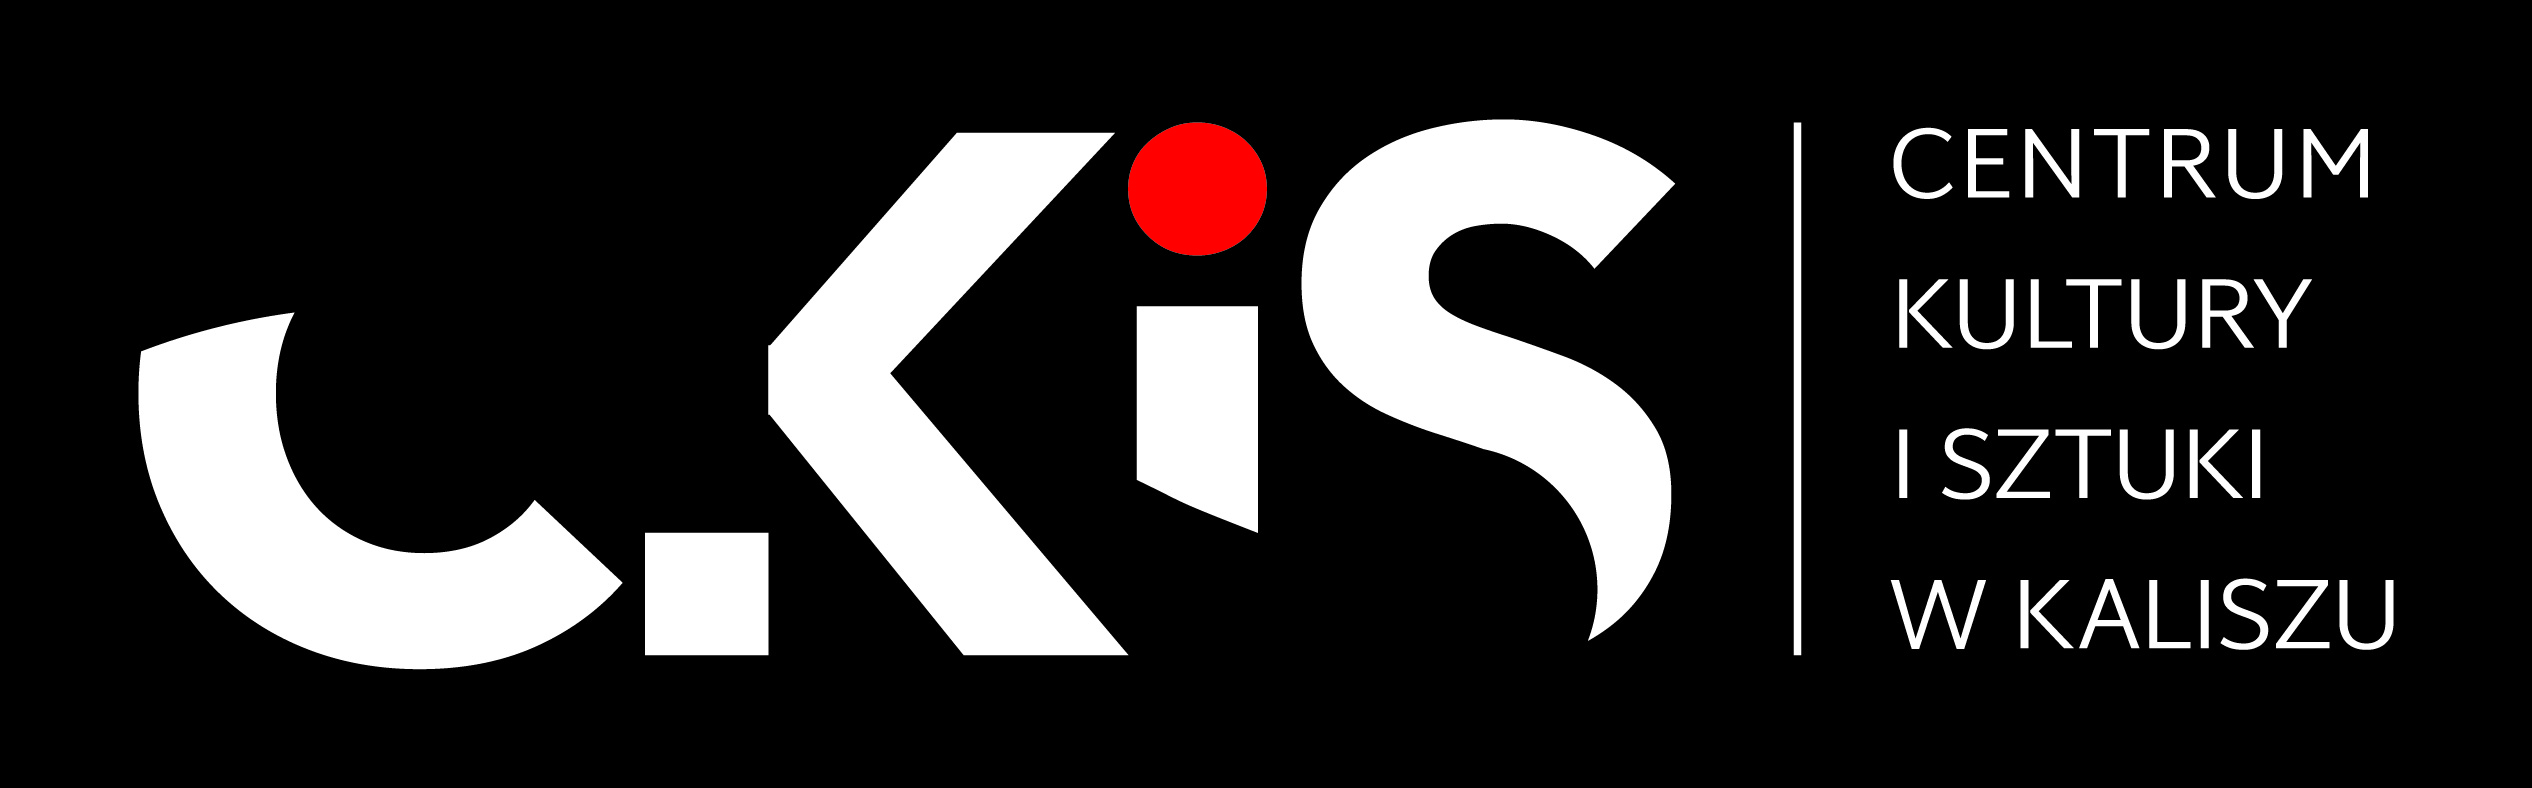 Logo CKiS w Kaliszu-01